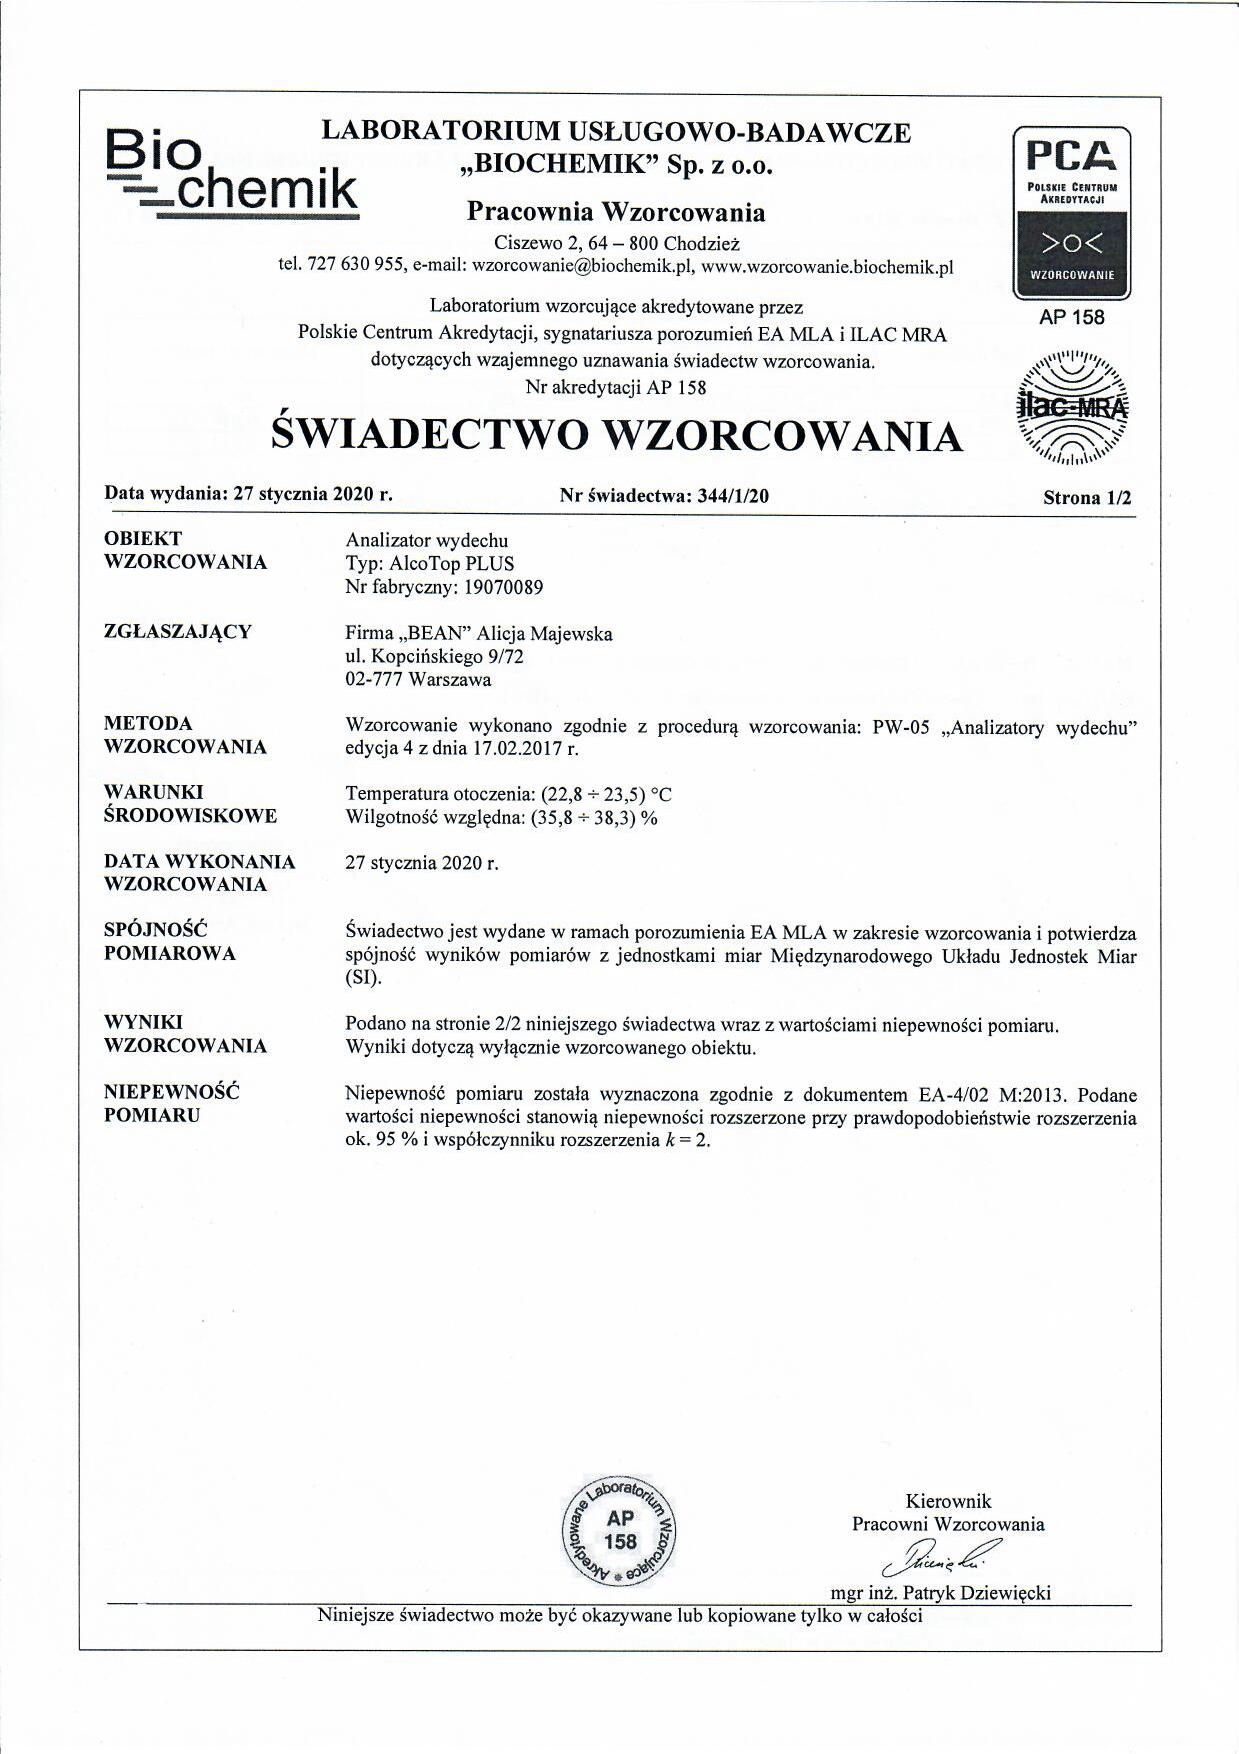 Alkomat przesiewowy AlkoTOP PLUS 2 lata gwarancji